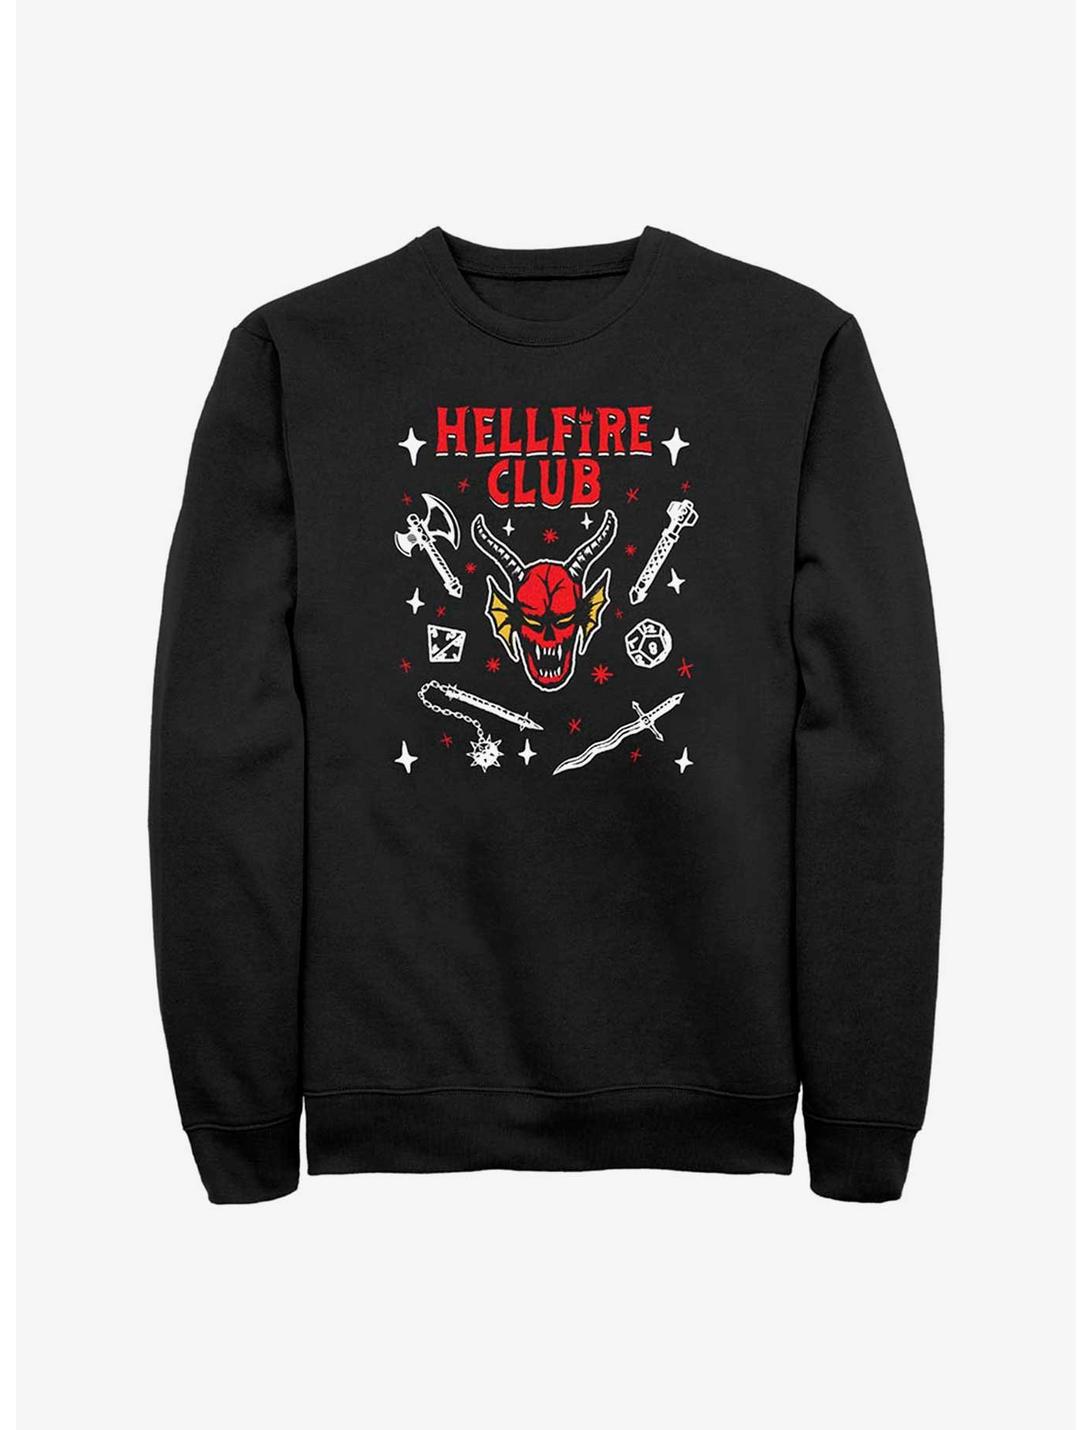 Stranger Things Textbook Hellfire Club Sweatshirt, BLACK, hi-res